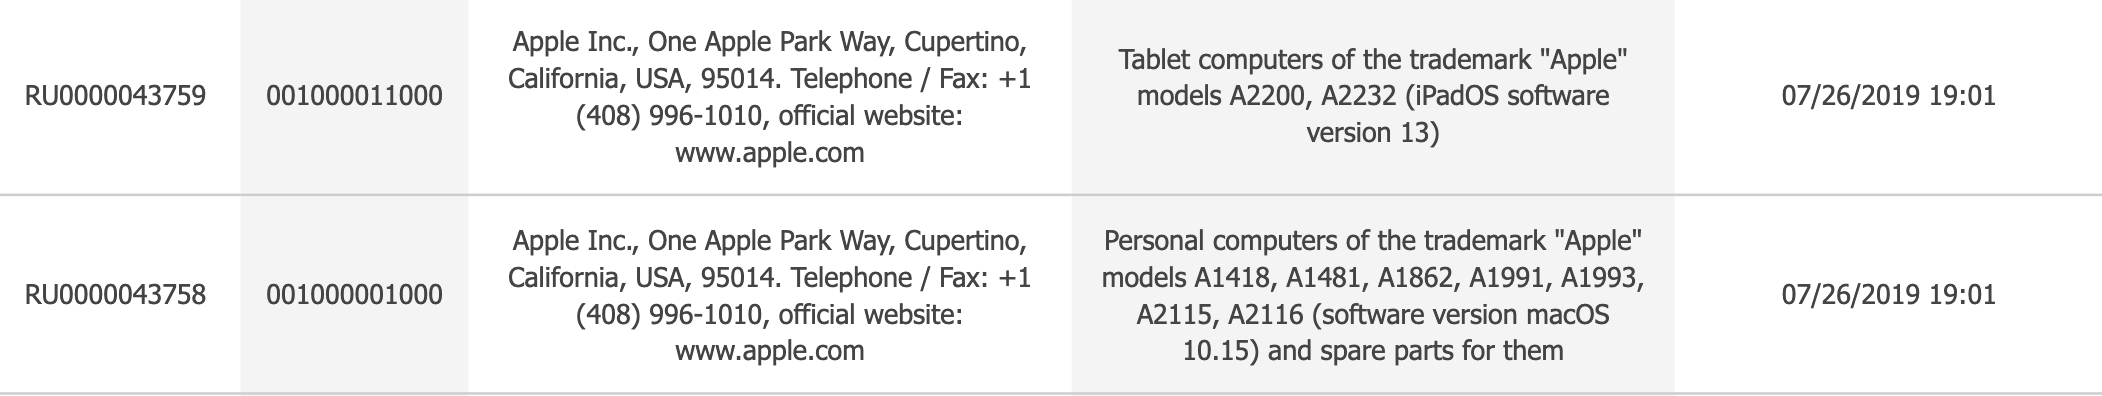 Apple BEVESTIGT OFFICIEEL twee NIEUWE producten voor LANCERING-registratie